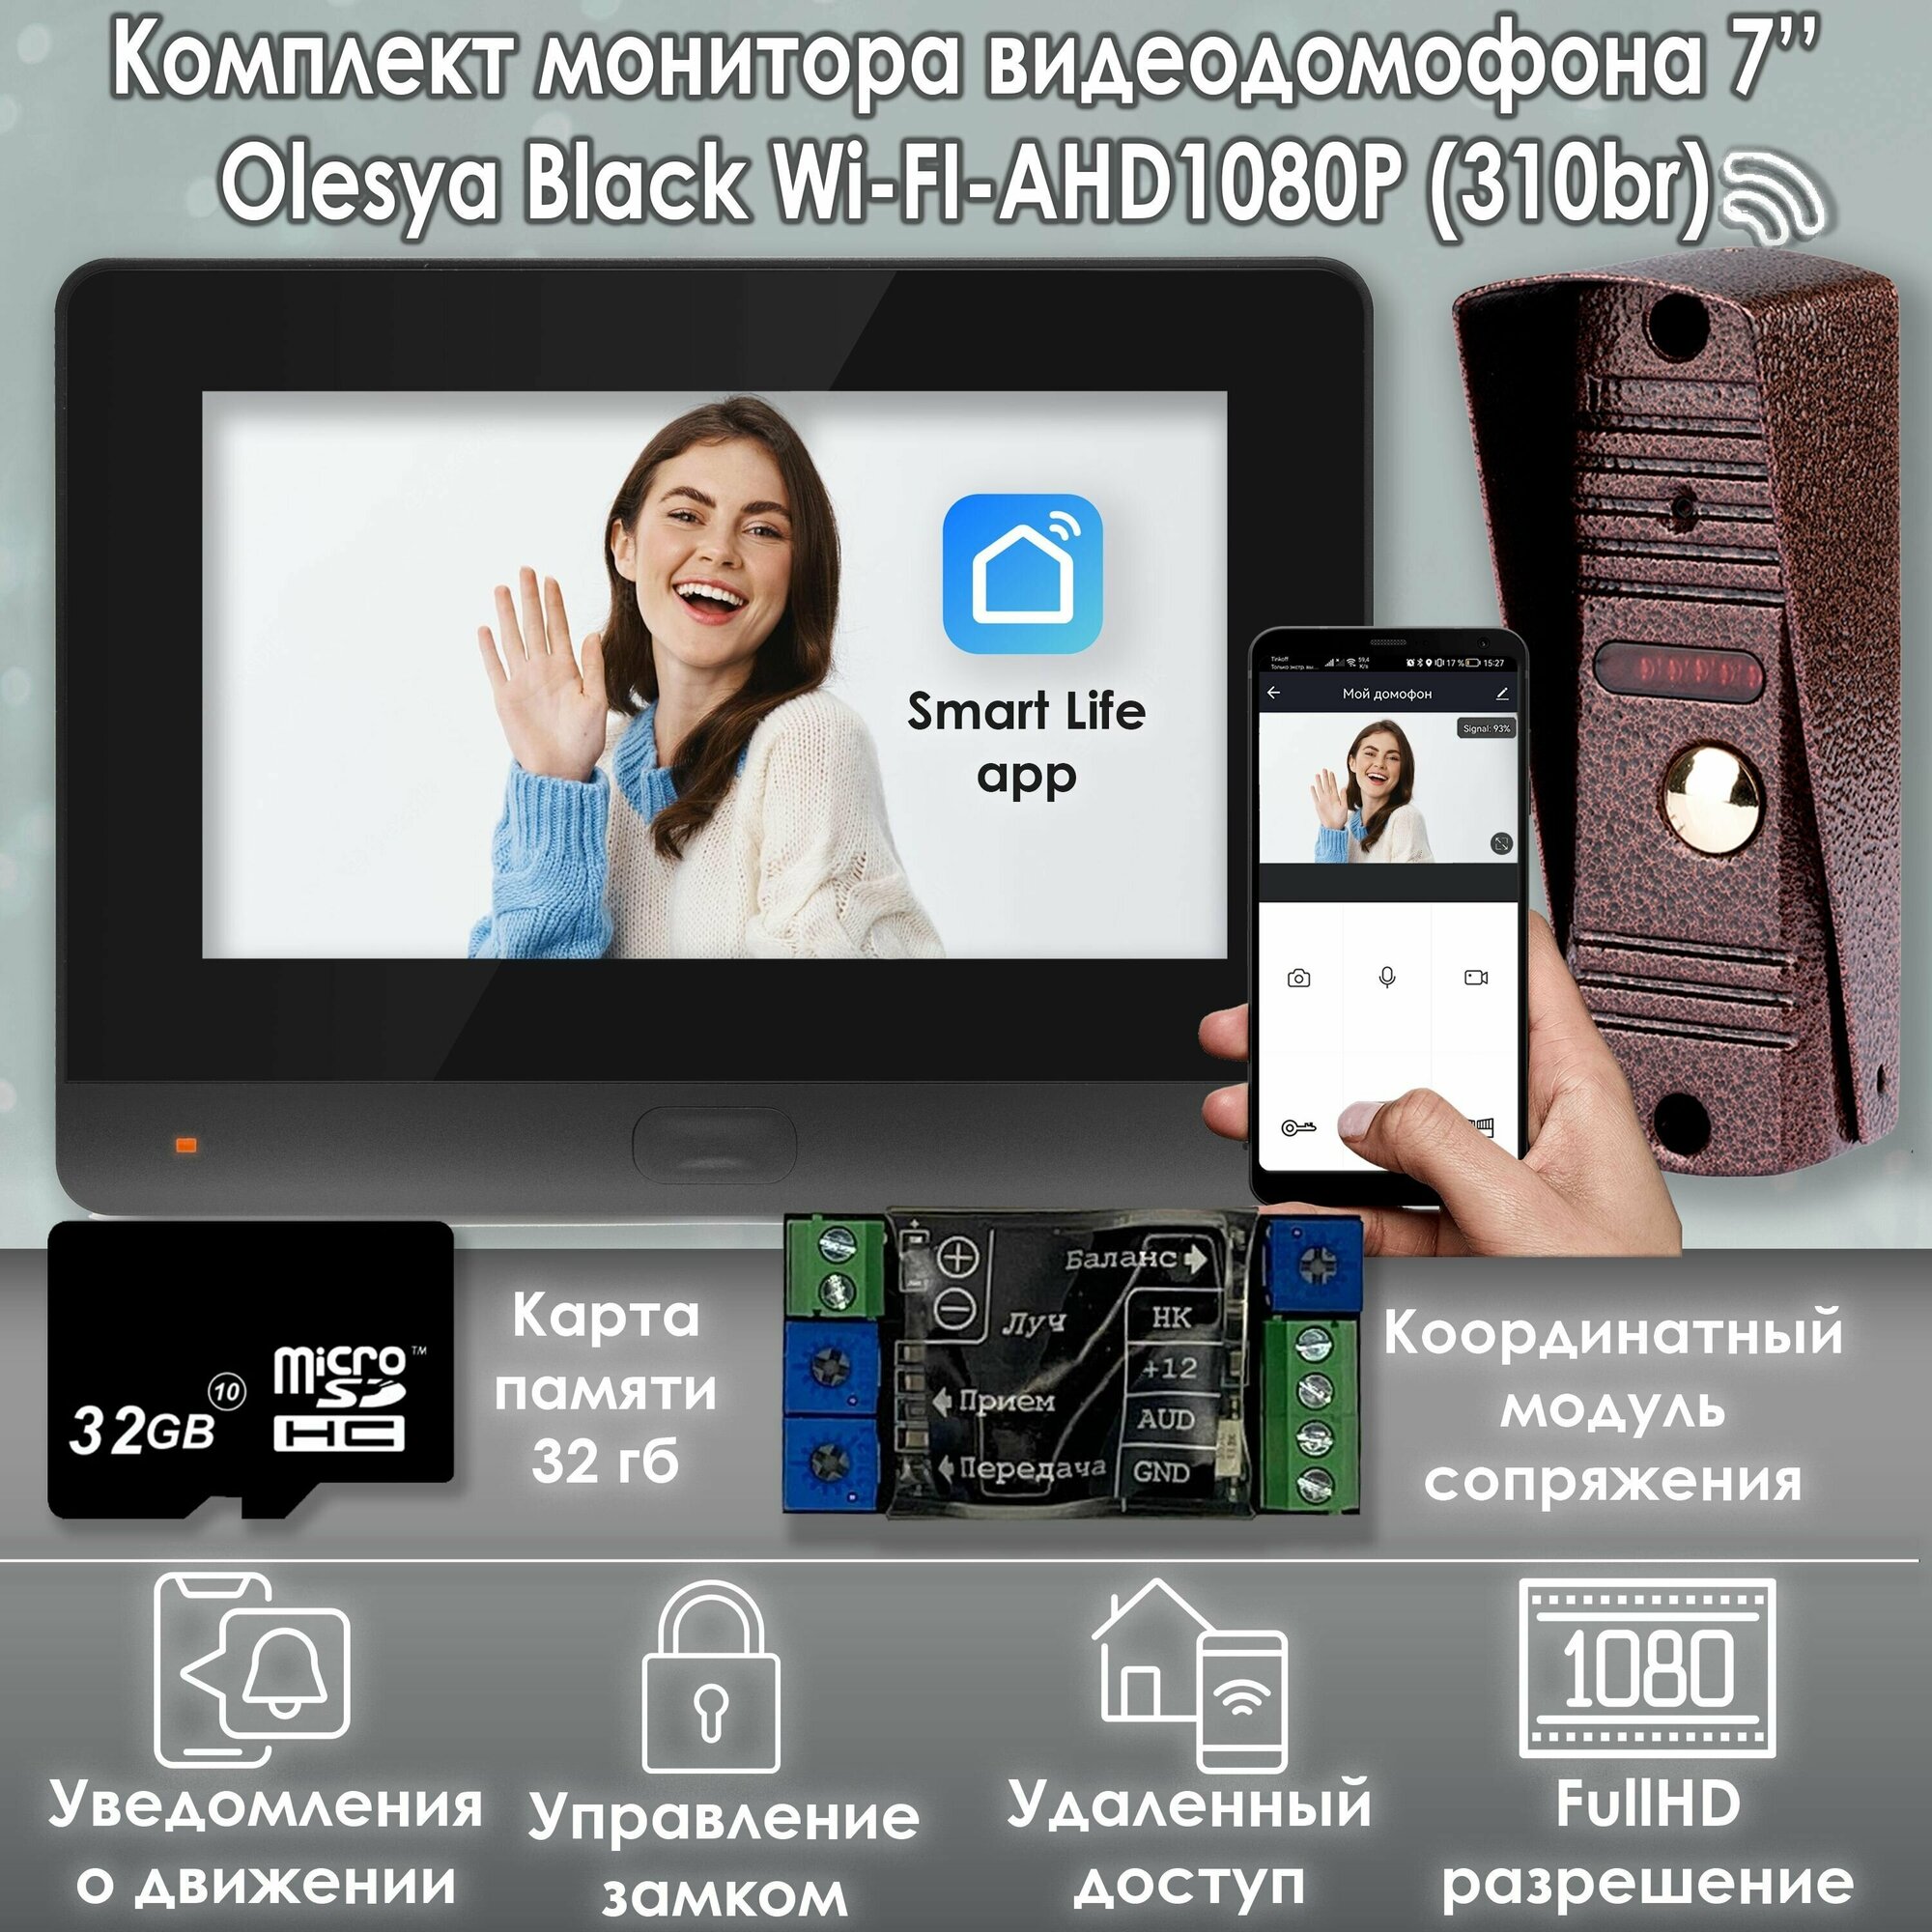 Комплект видеодомофона Olesya Wi-Fi AHD1080P Full HD (310br). Черный. Экран 7". В комплект входит модуль сопряжения "МСК-слим" для работы с подъездными домофонами Vizit, Cyfral, Eltis и карта памяти